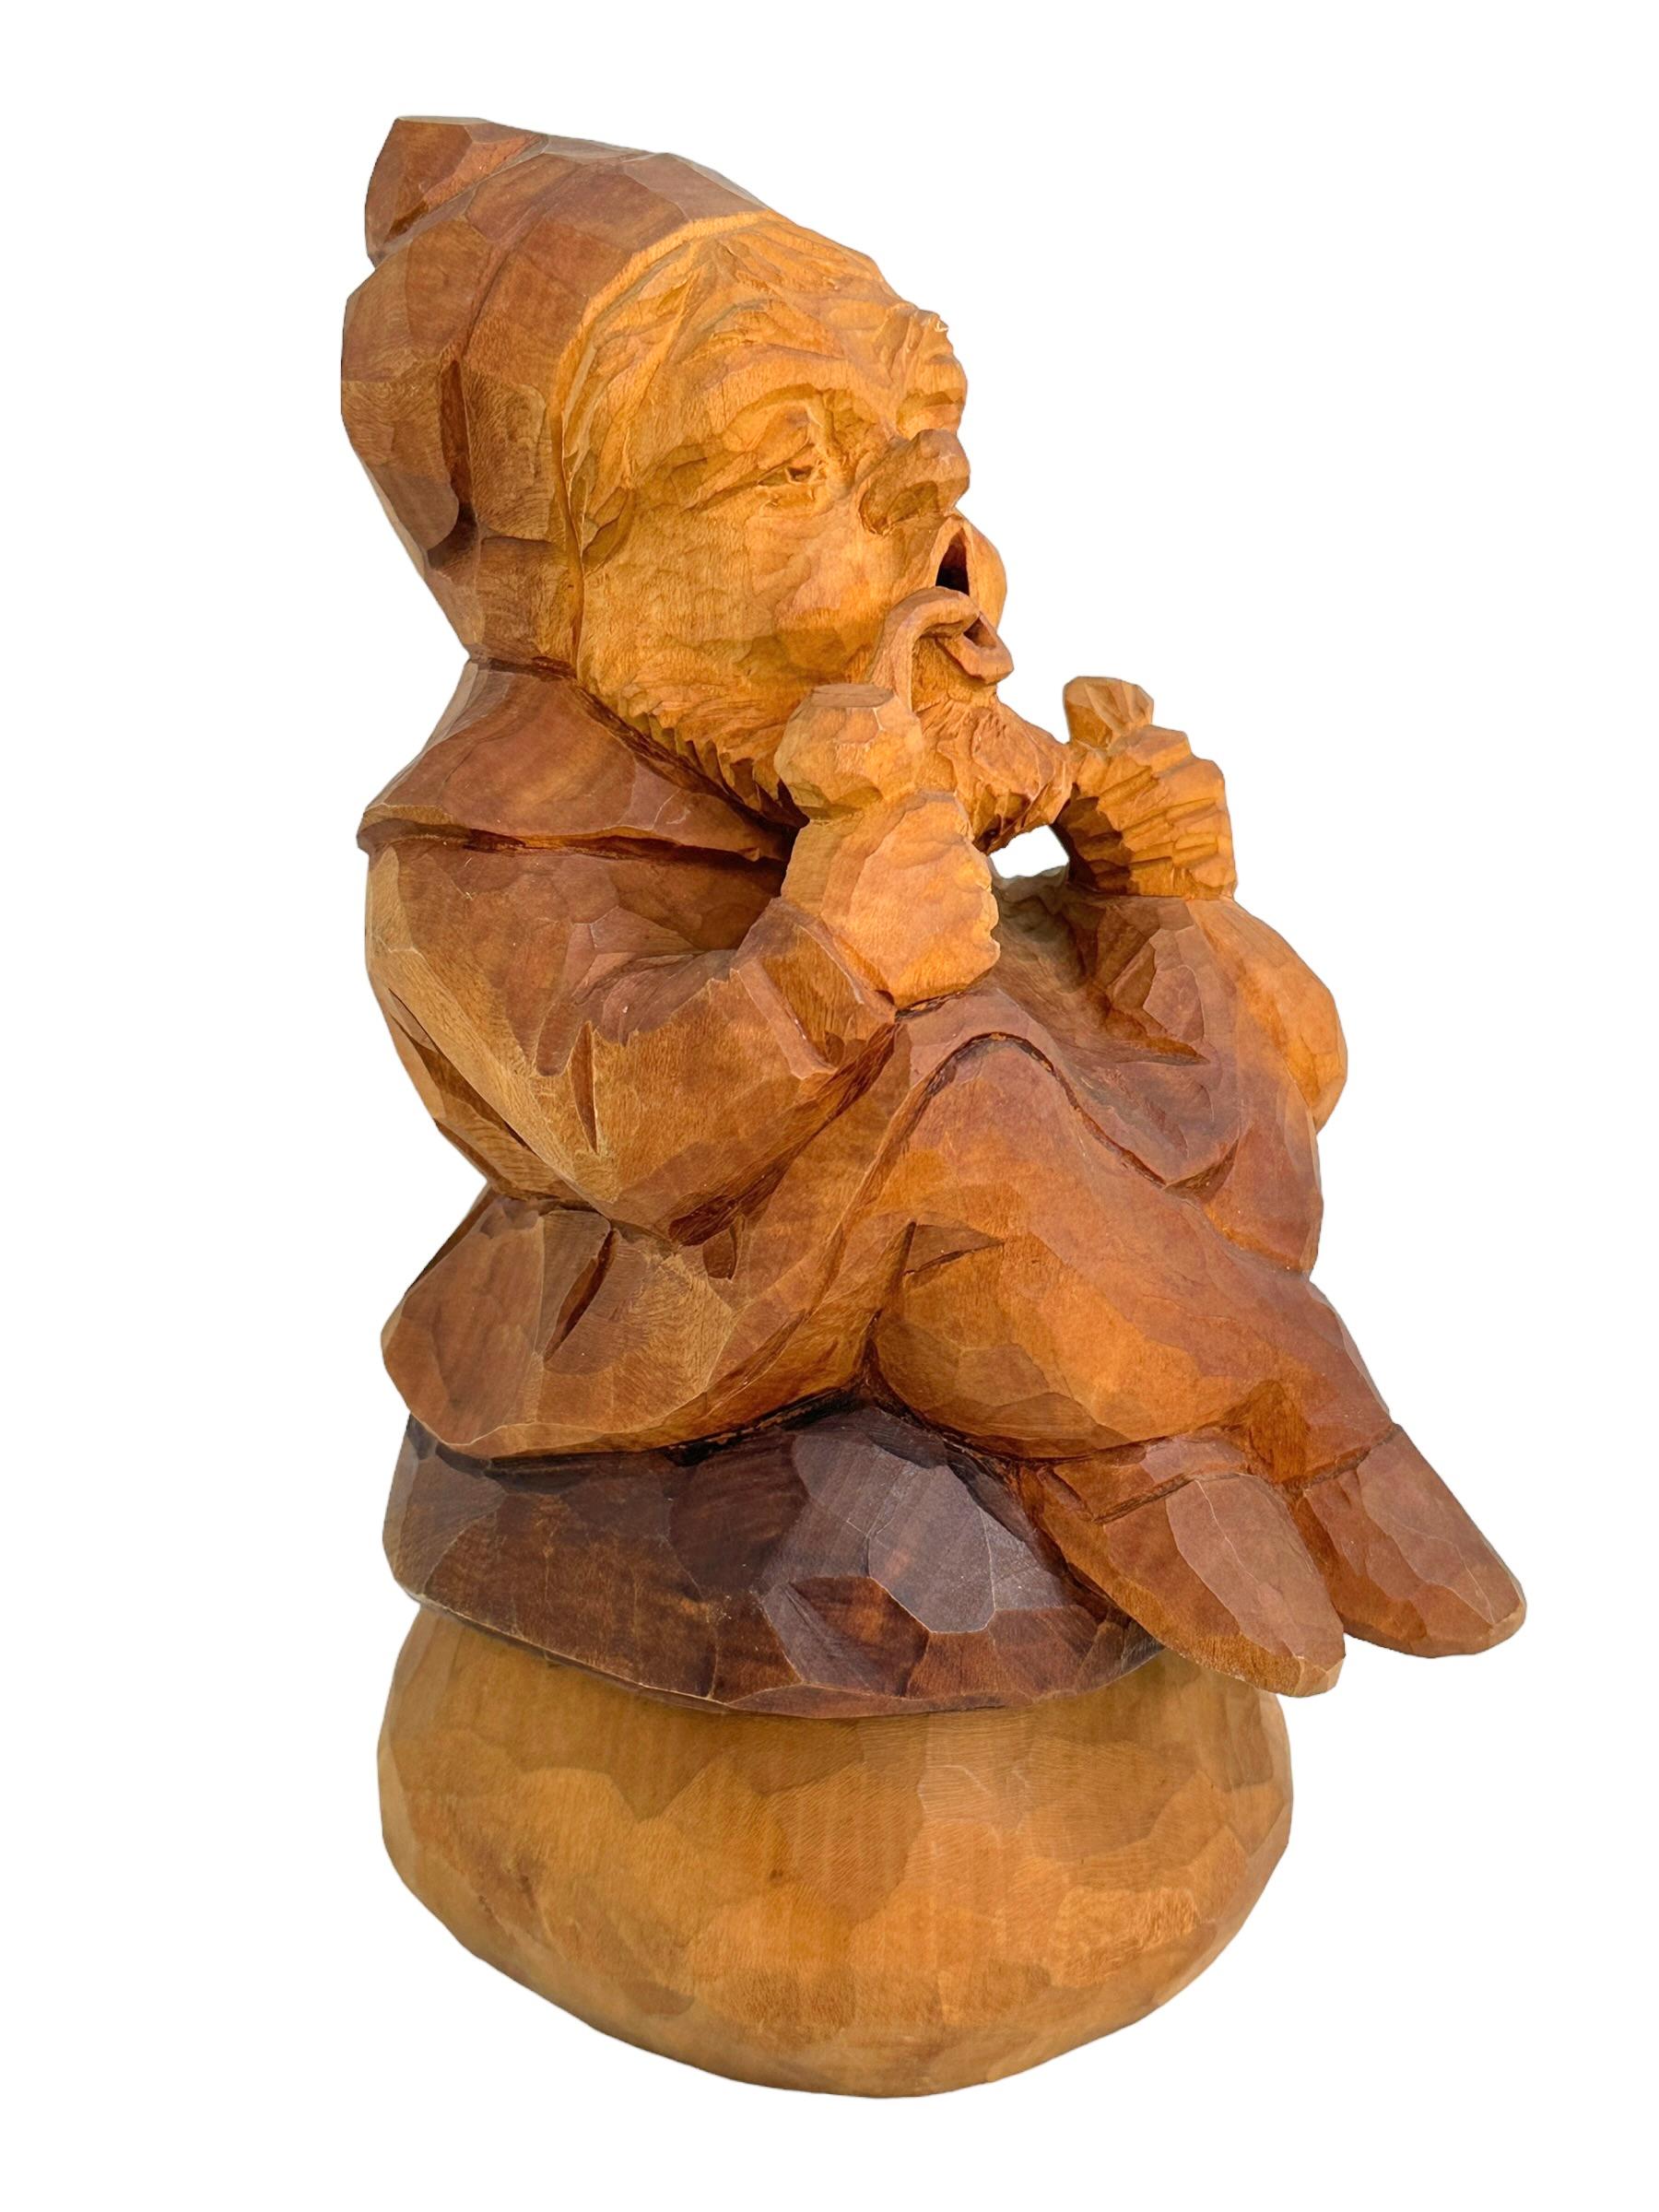 Hand-Carved Hand Carved Wooden Smoker Gnome Figure, Vintage German Black Forest Folk Art  For Sale